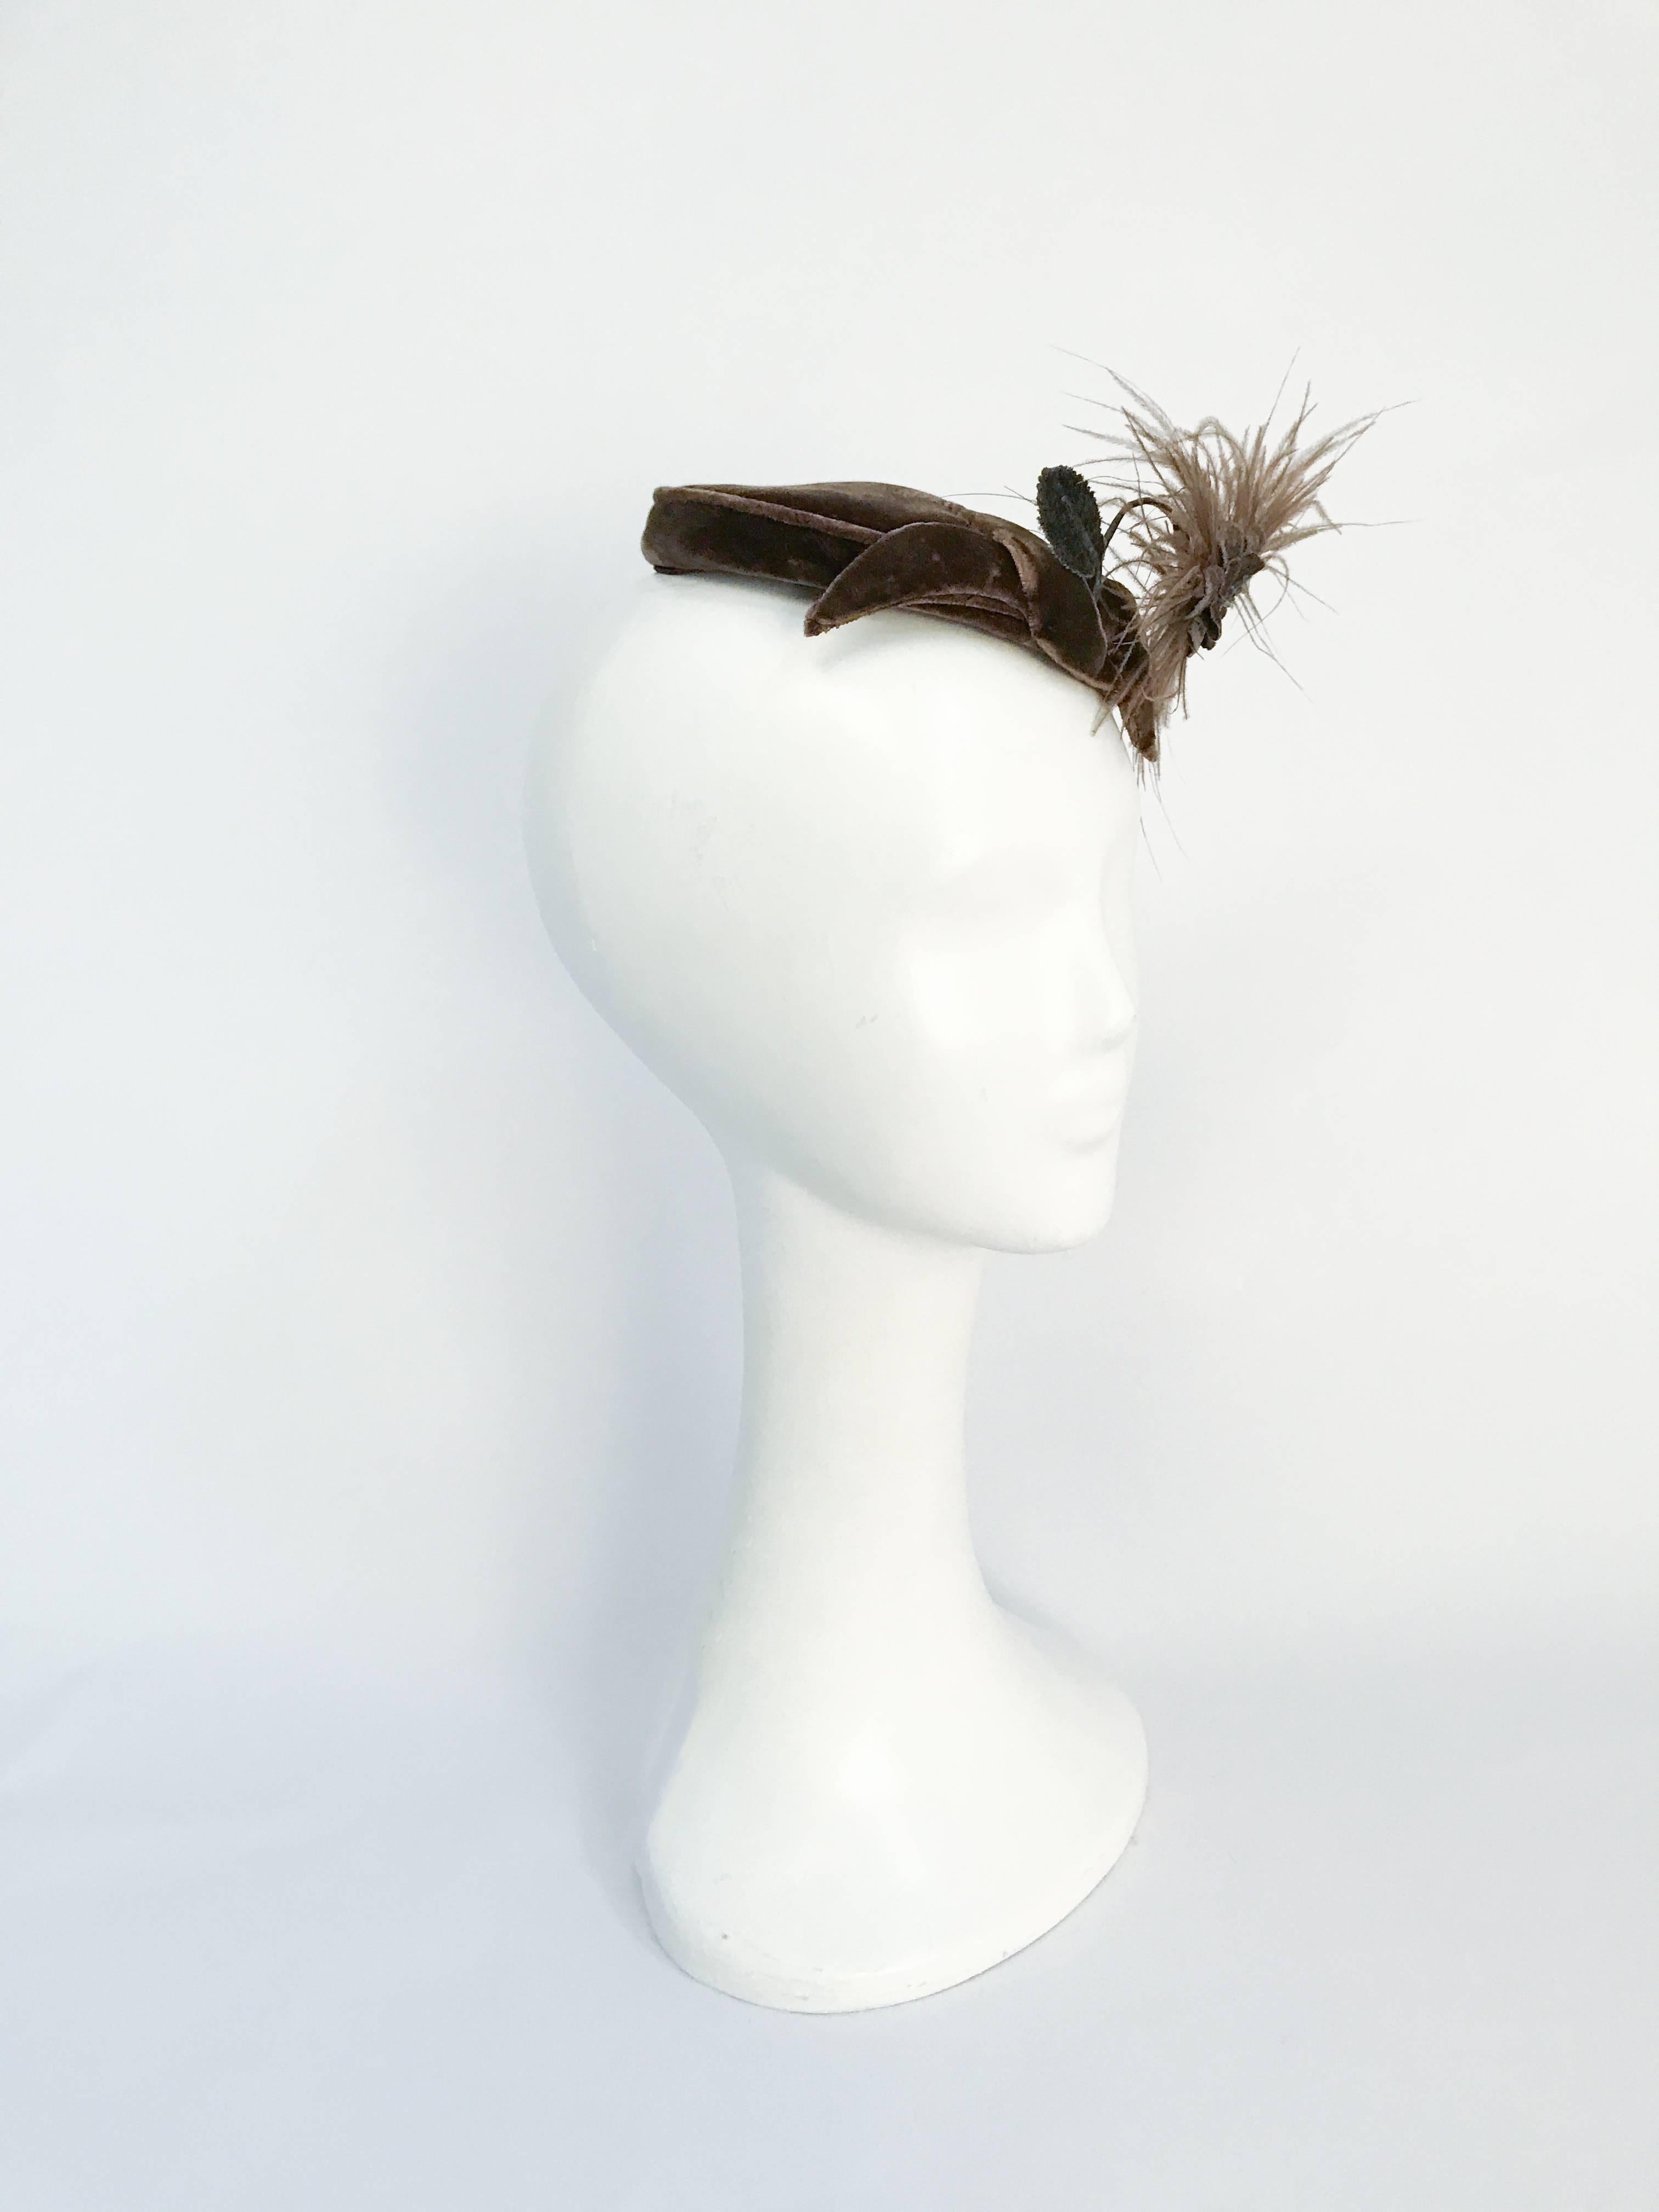 1950er Jahre Taupe Rayon Samt mit gefiederten Blume. Taupefarbener Rayonsamthut mit handgefertigter Samtblume, die mit Marabufedern verziert ist. Gummiband zur Befestigung der Mütze am Kopf.